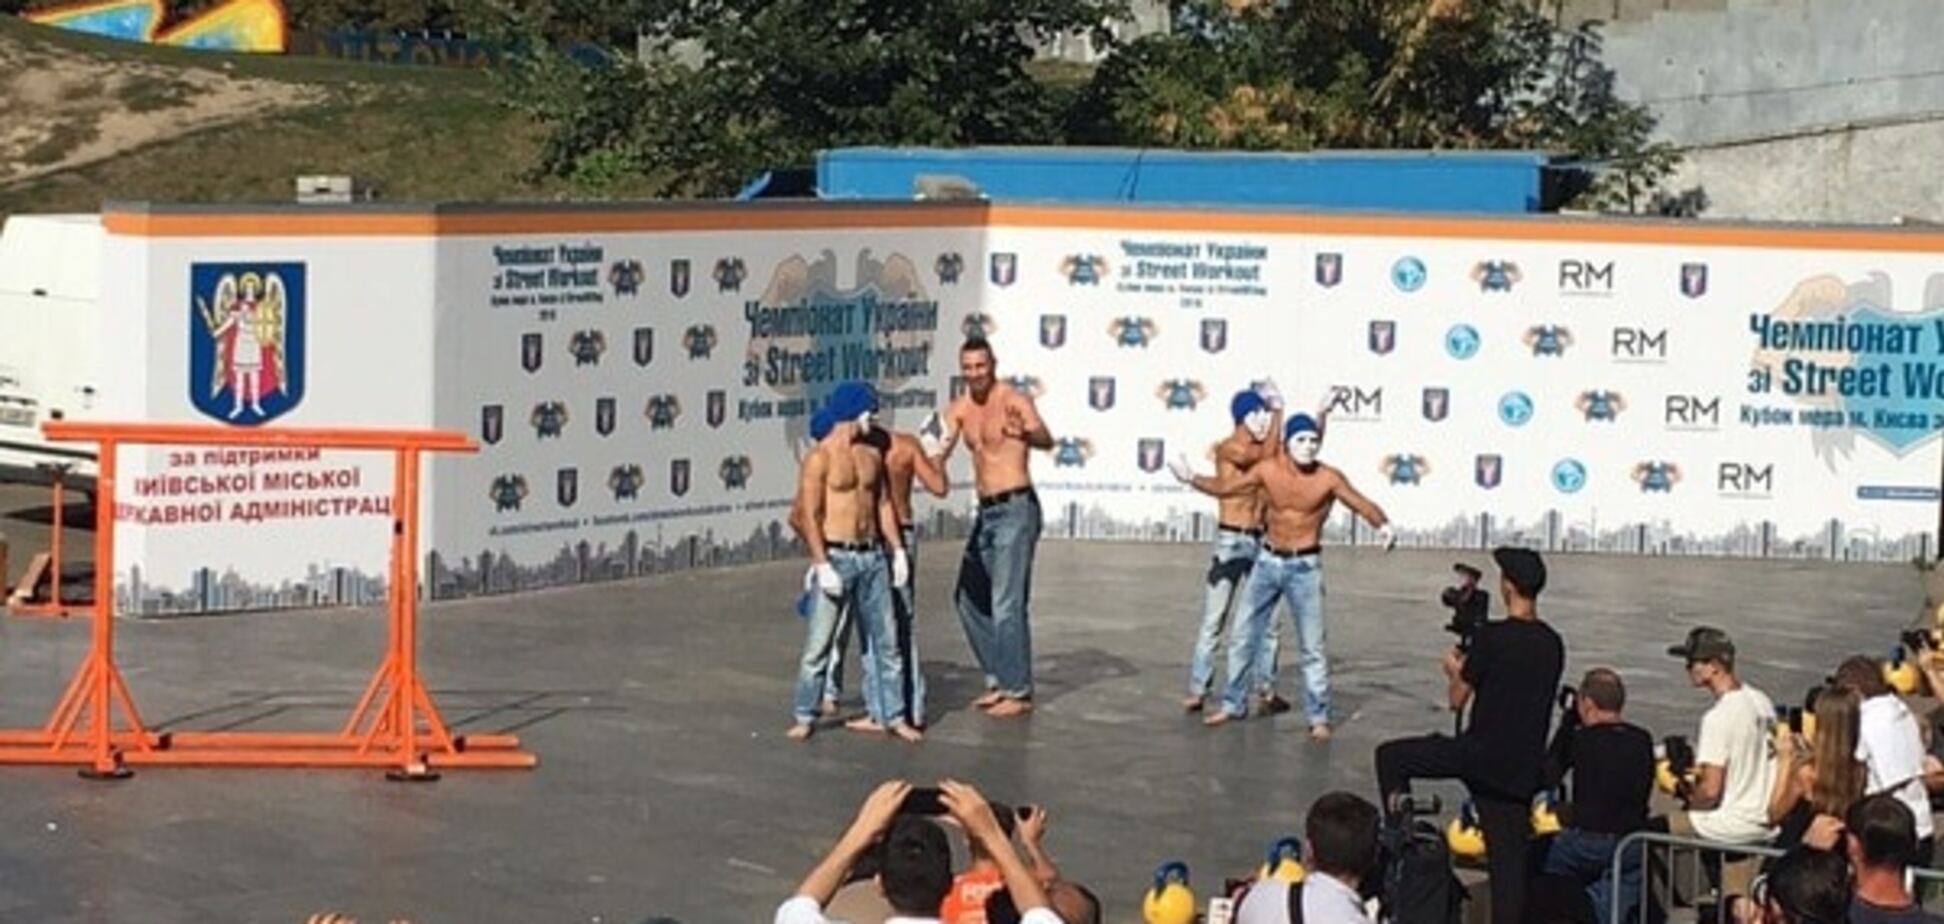 В маске и полуобнаженный: Кличко похвастался фигурой на чемпионате по Street Workout в Киеве. Опубликованы фото